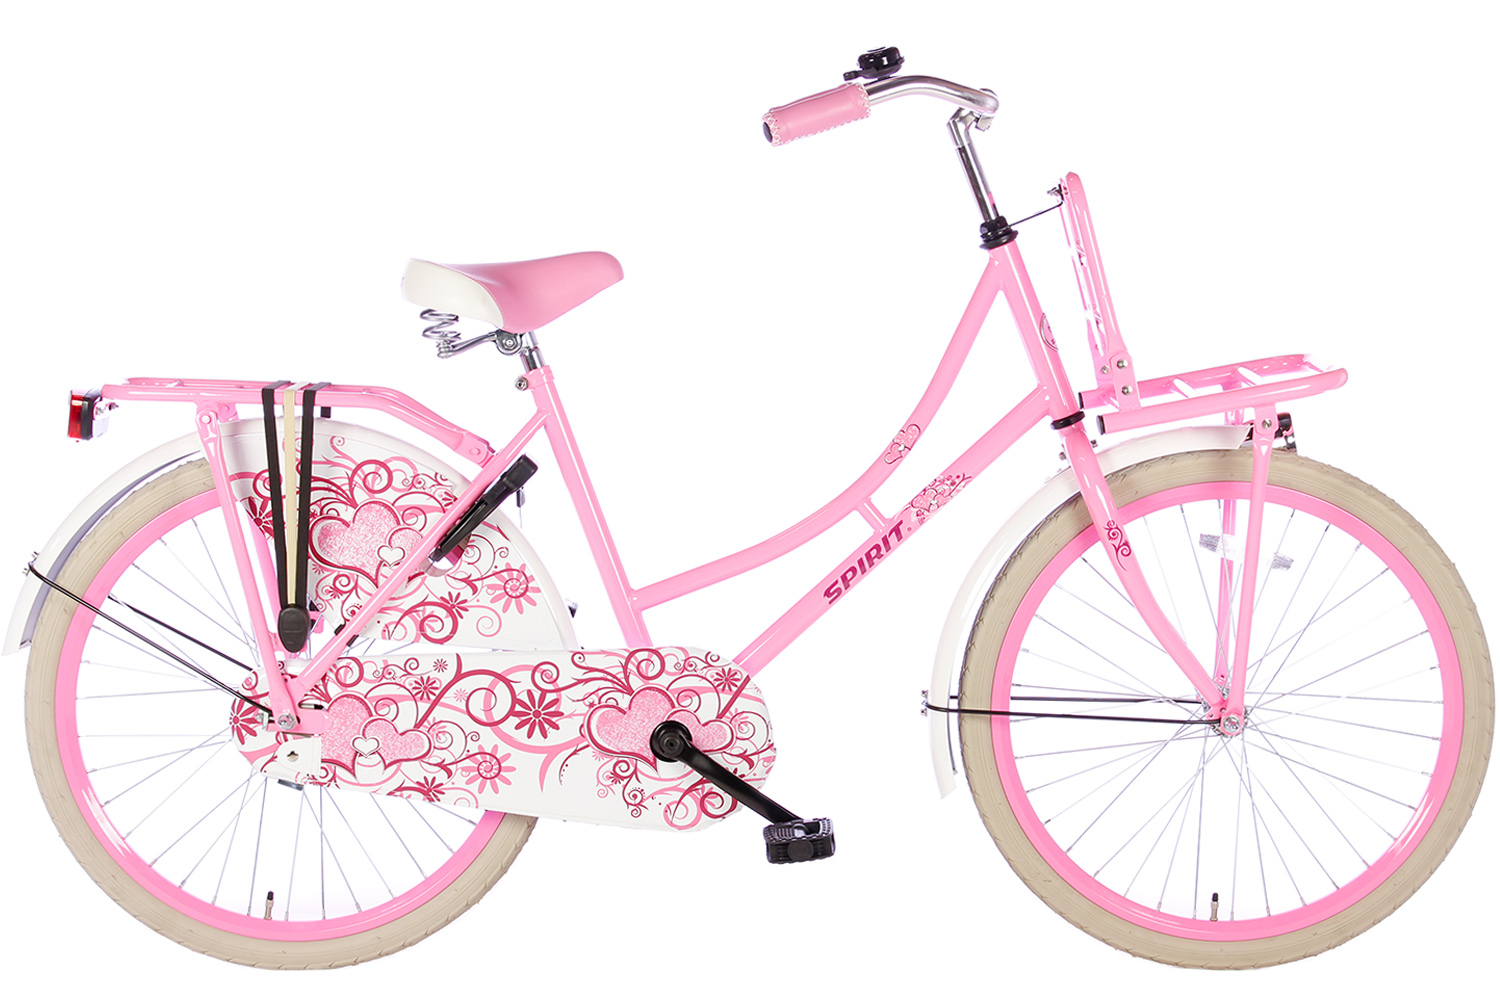 Bende mentaal Fotoelektrisch Spirit Omafiets Roze 24 inch - Meisjesfiets | City-Bikes.nl